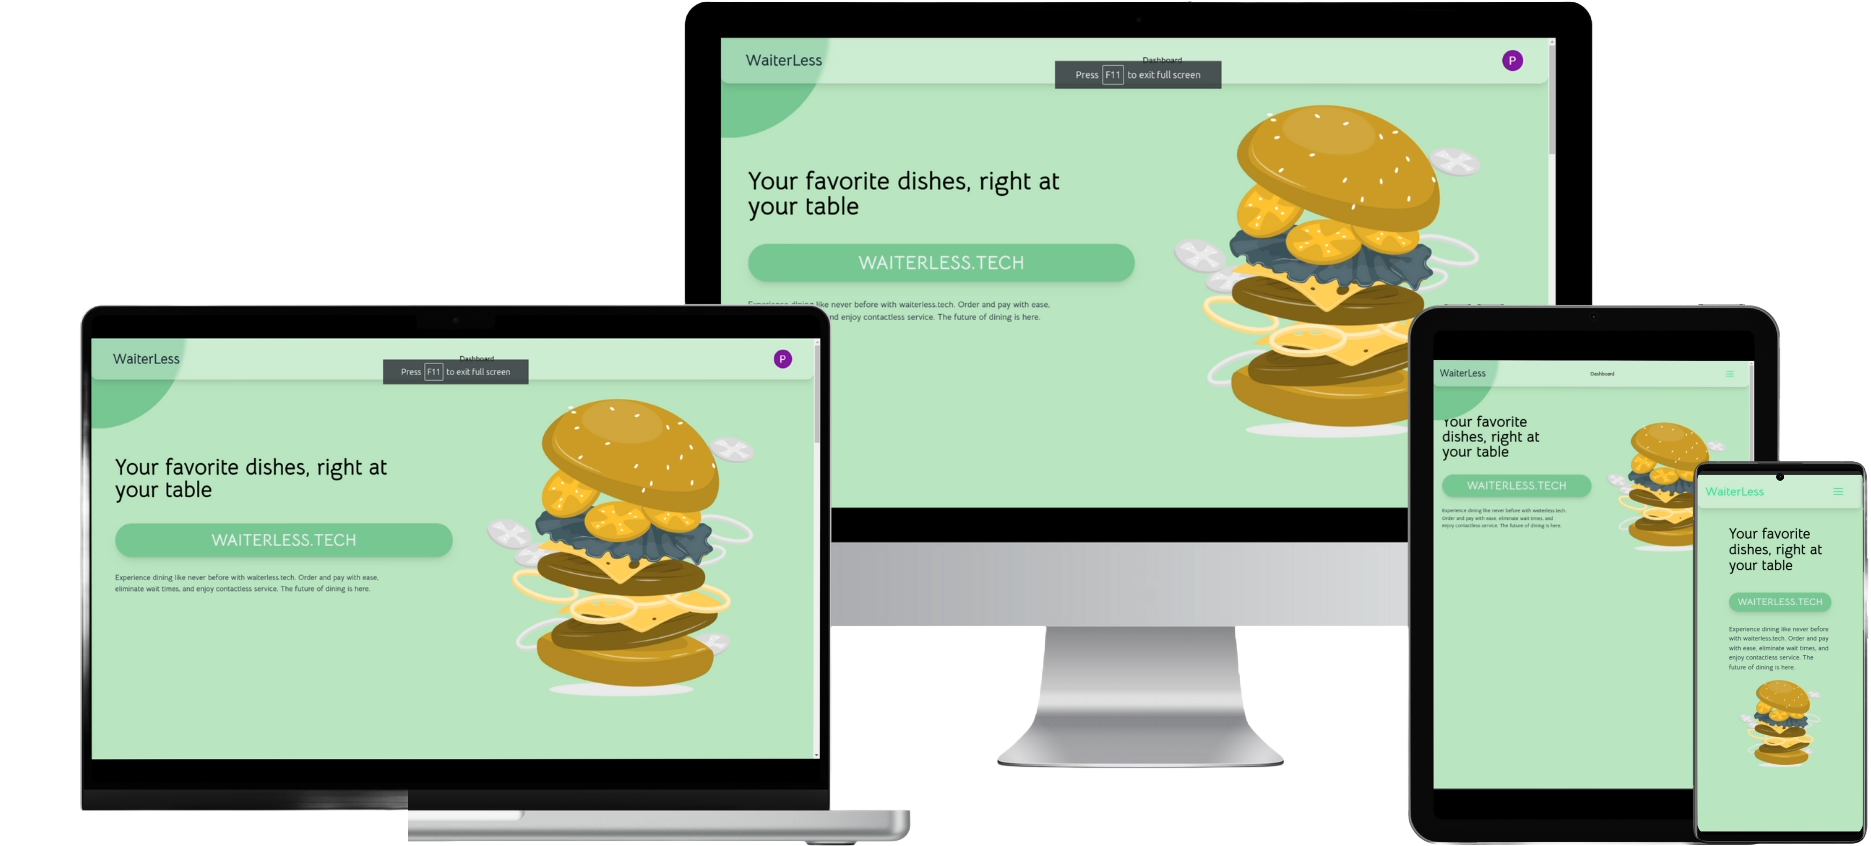 Waiterless - An Qr based Ordering System